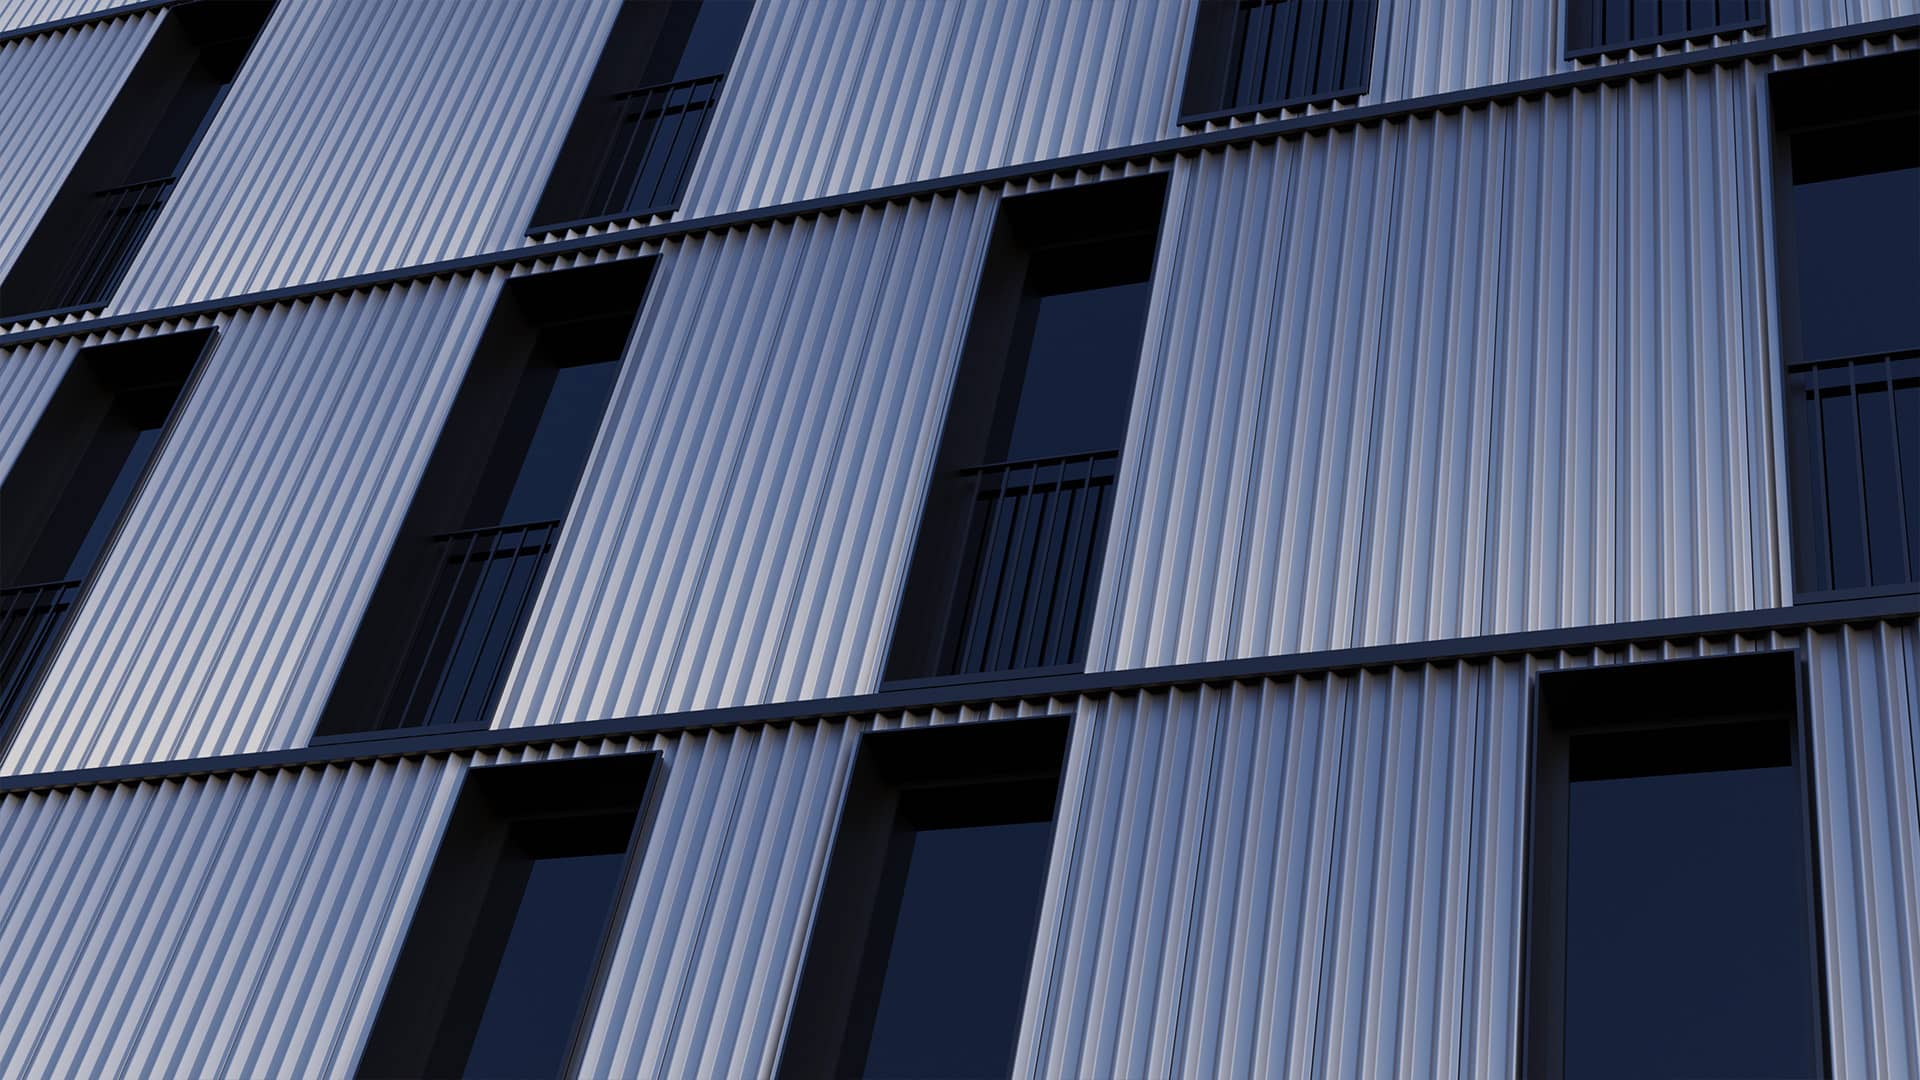 Vue 3D d'une façade ultra moderne avec un bardage métallique ondulé et des ouverture verticale